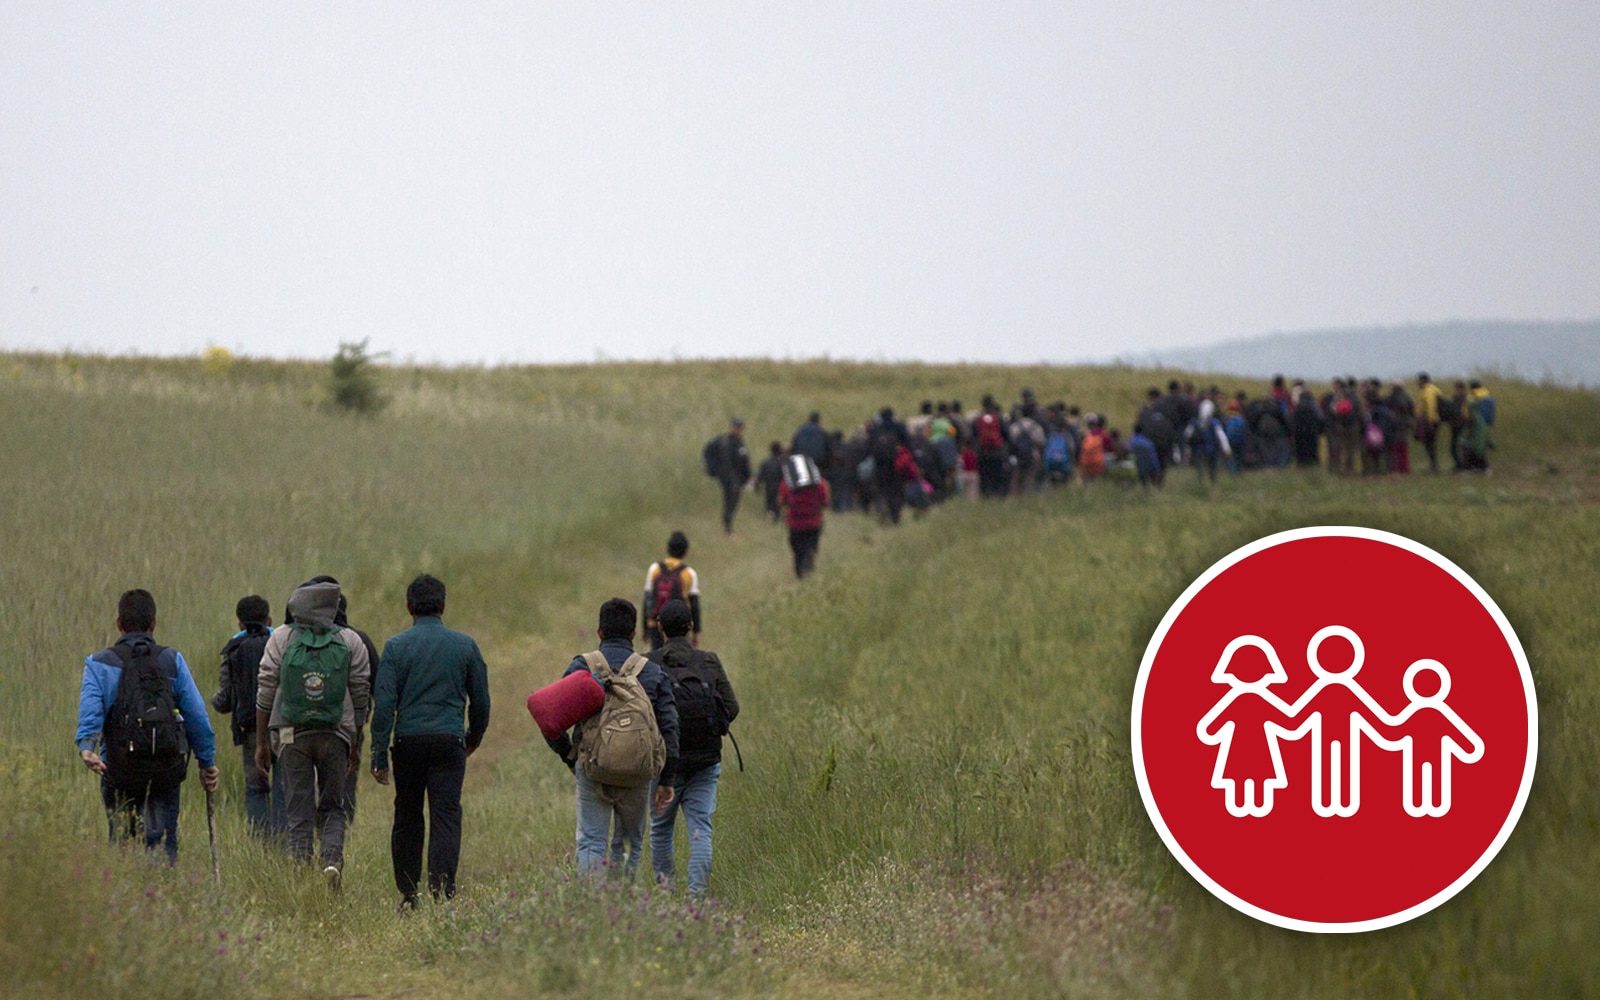  .: Un gruppo di profughi attraversa un campo passando in mezzo a una fitta distesa d’erba.